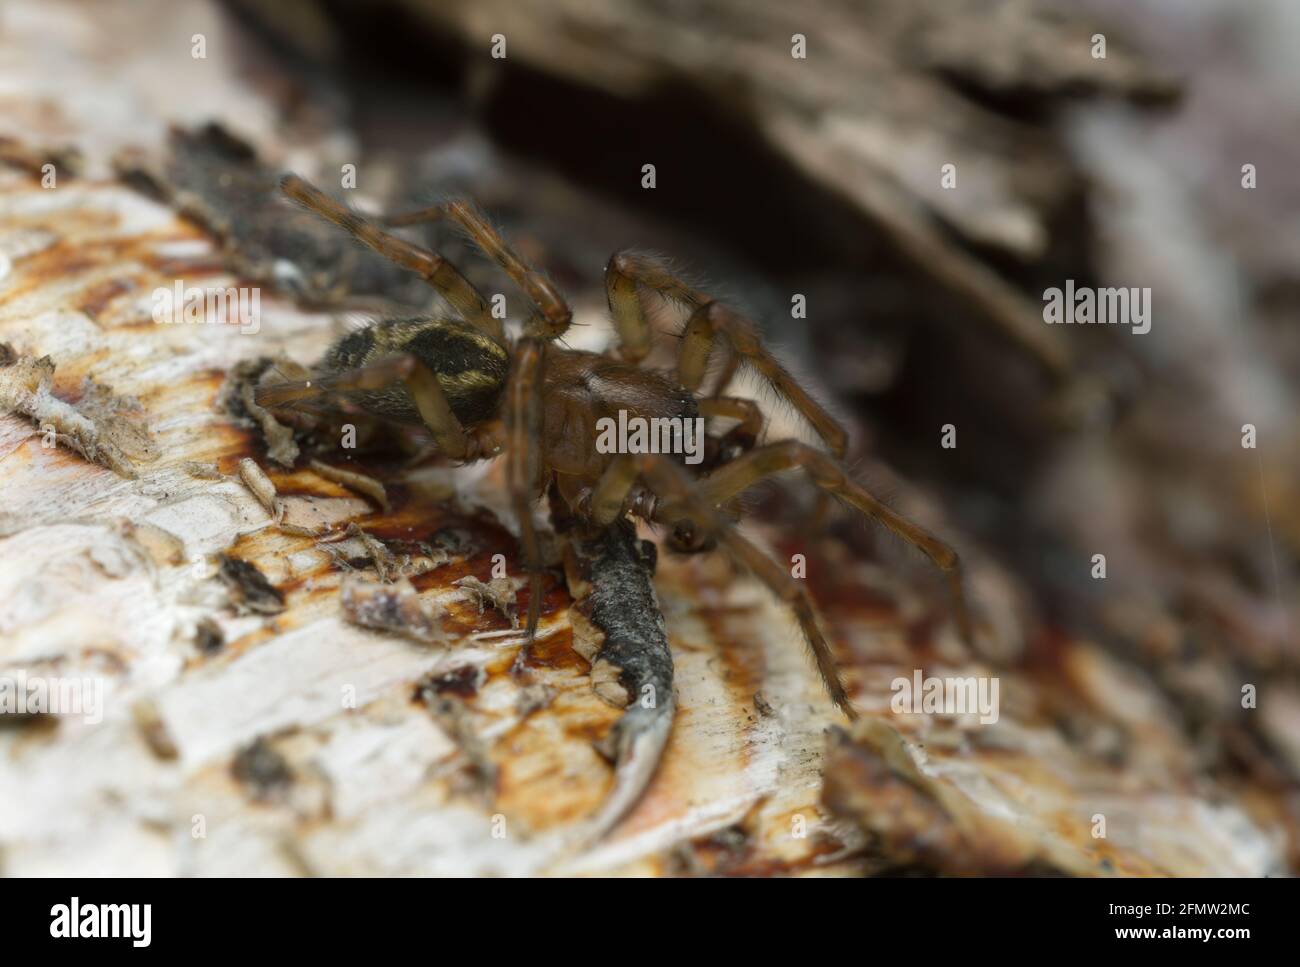 Araignée à toile de dentelle, Amaurobius similis sur bois, macro photo Banque D'Images